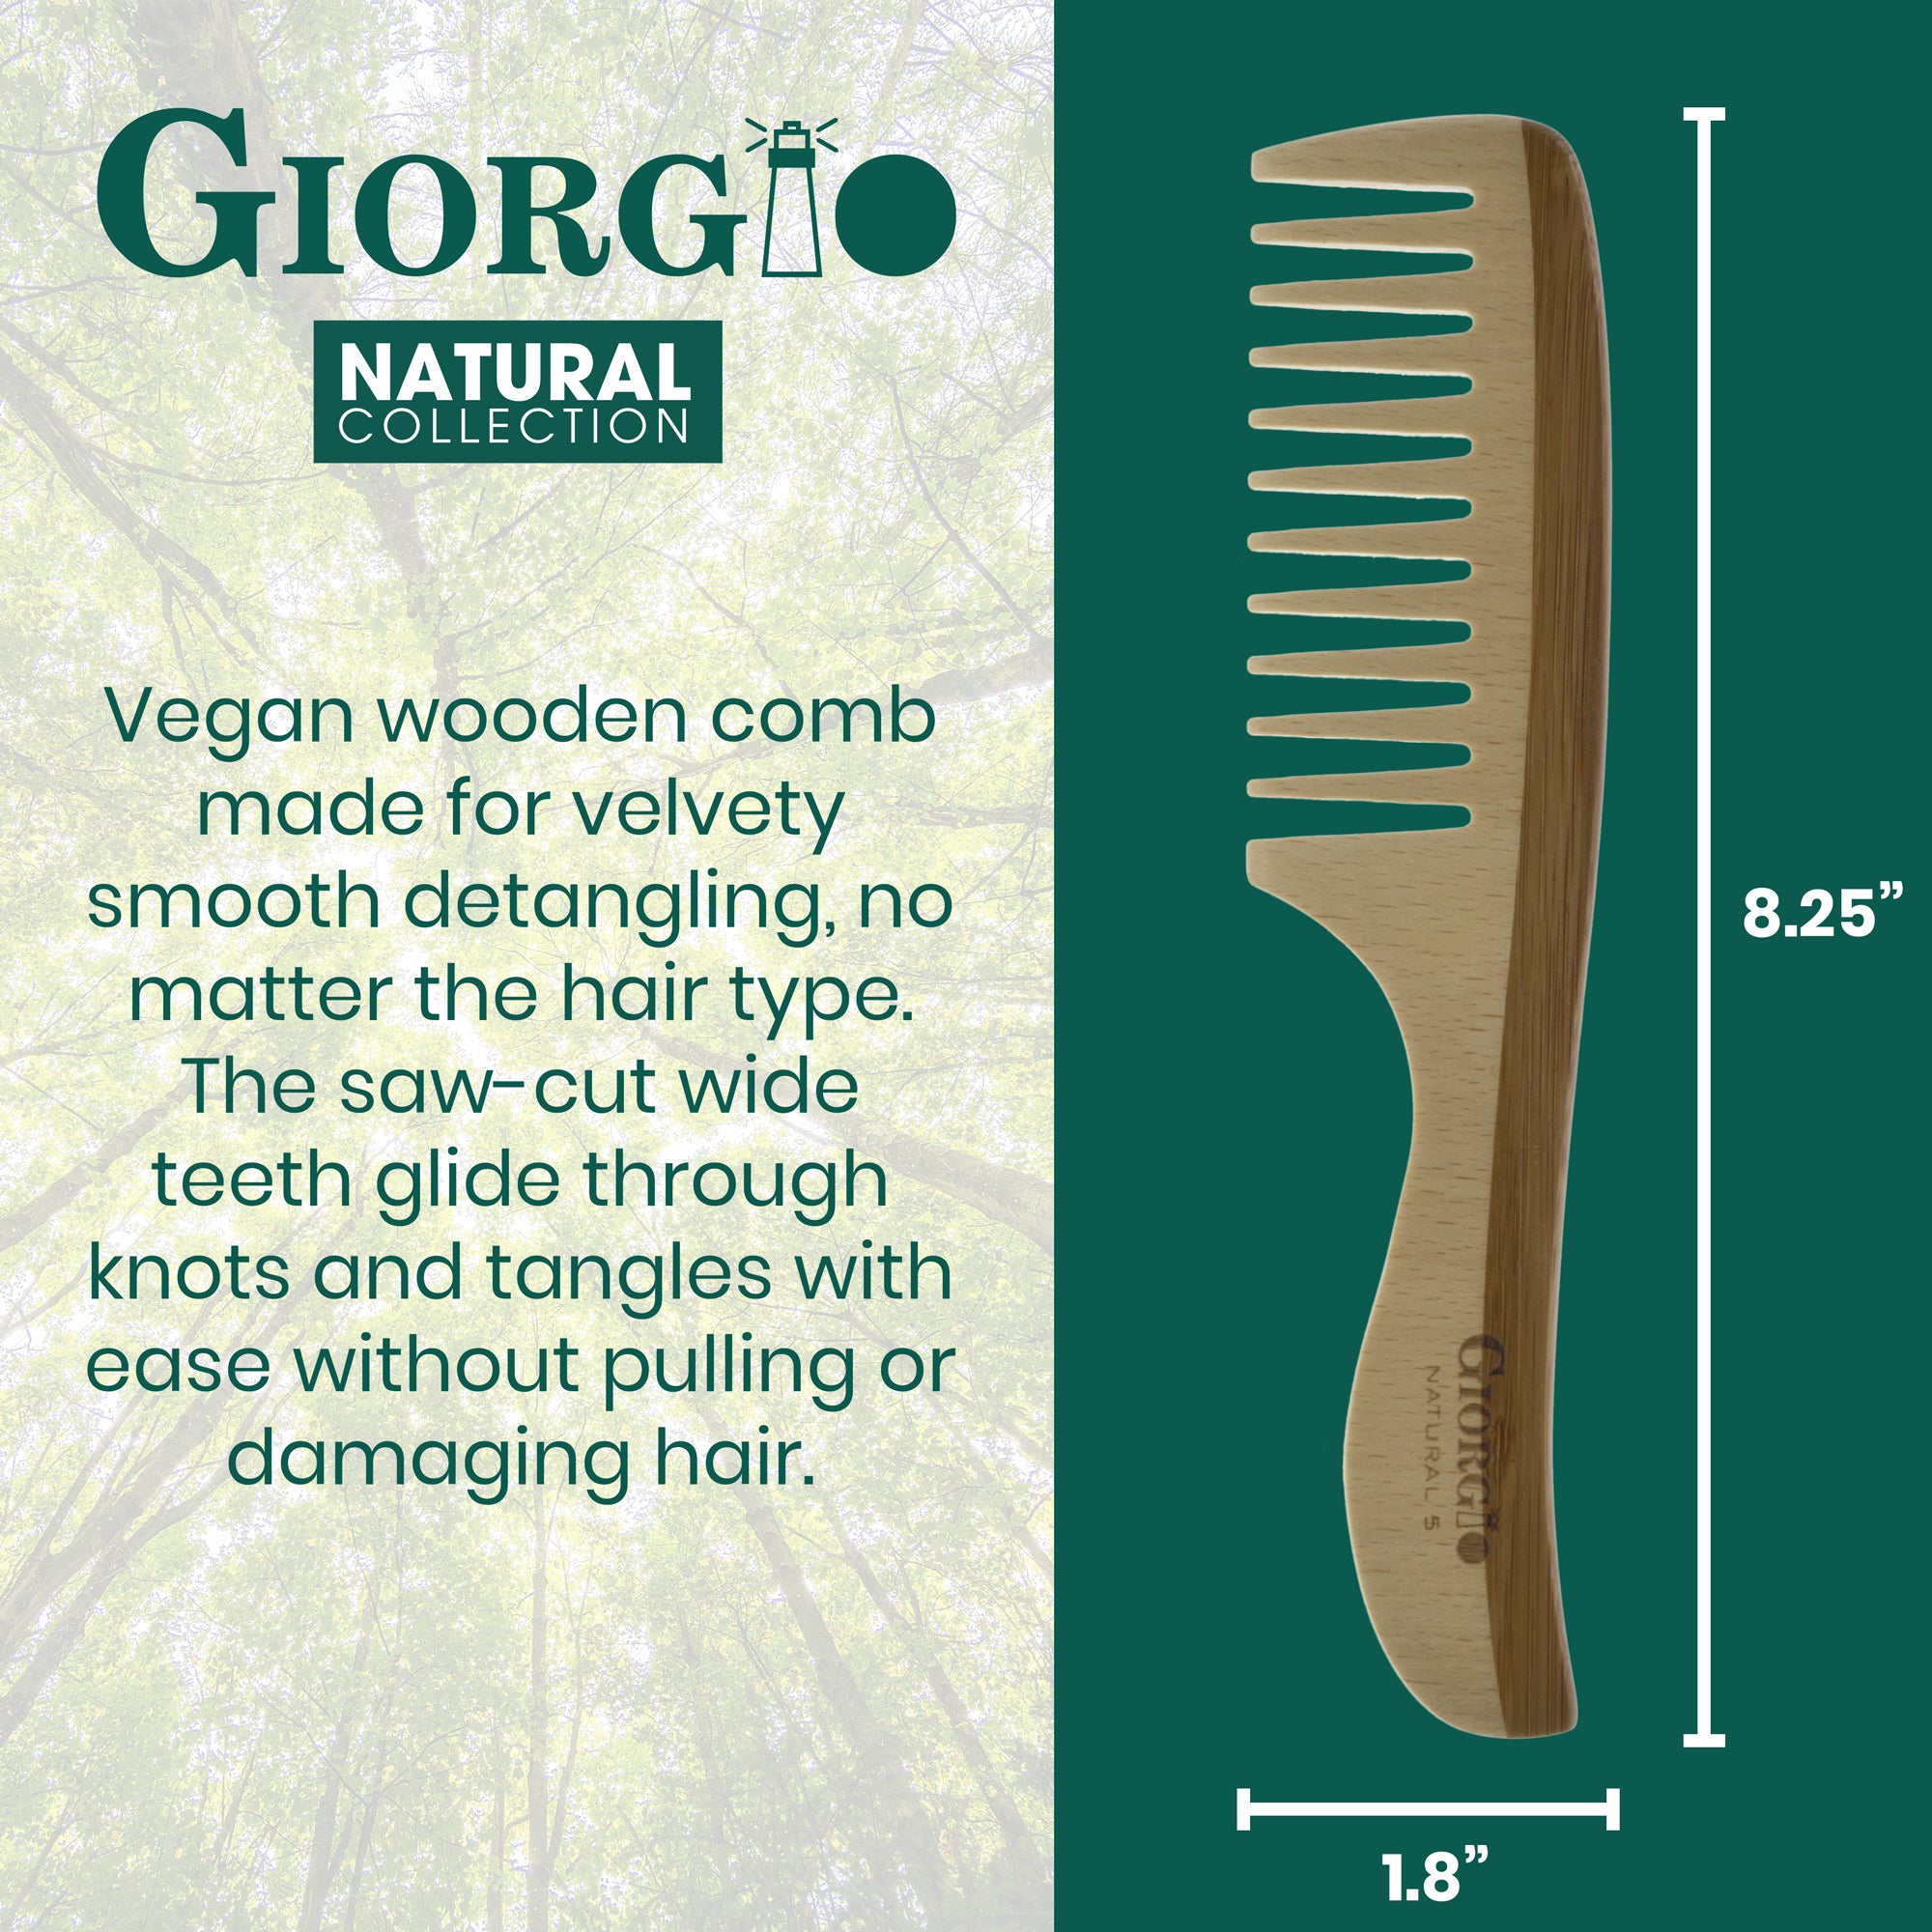  Natural Wooden Detangling Comb